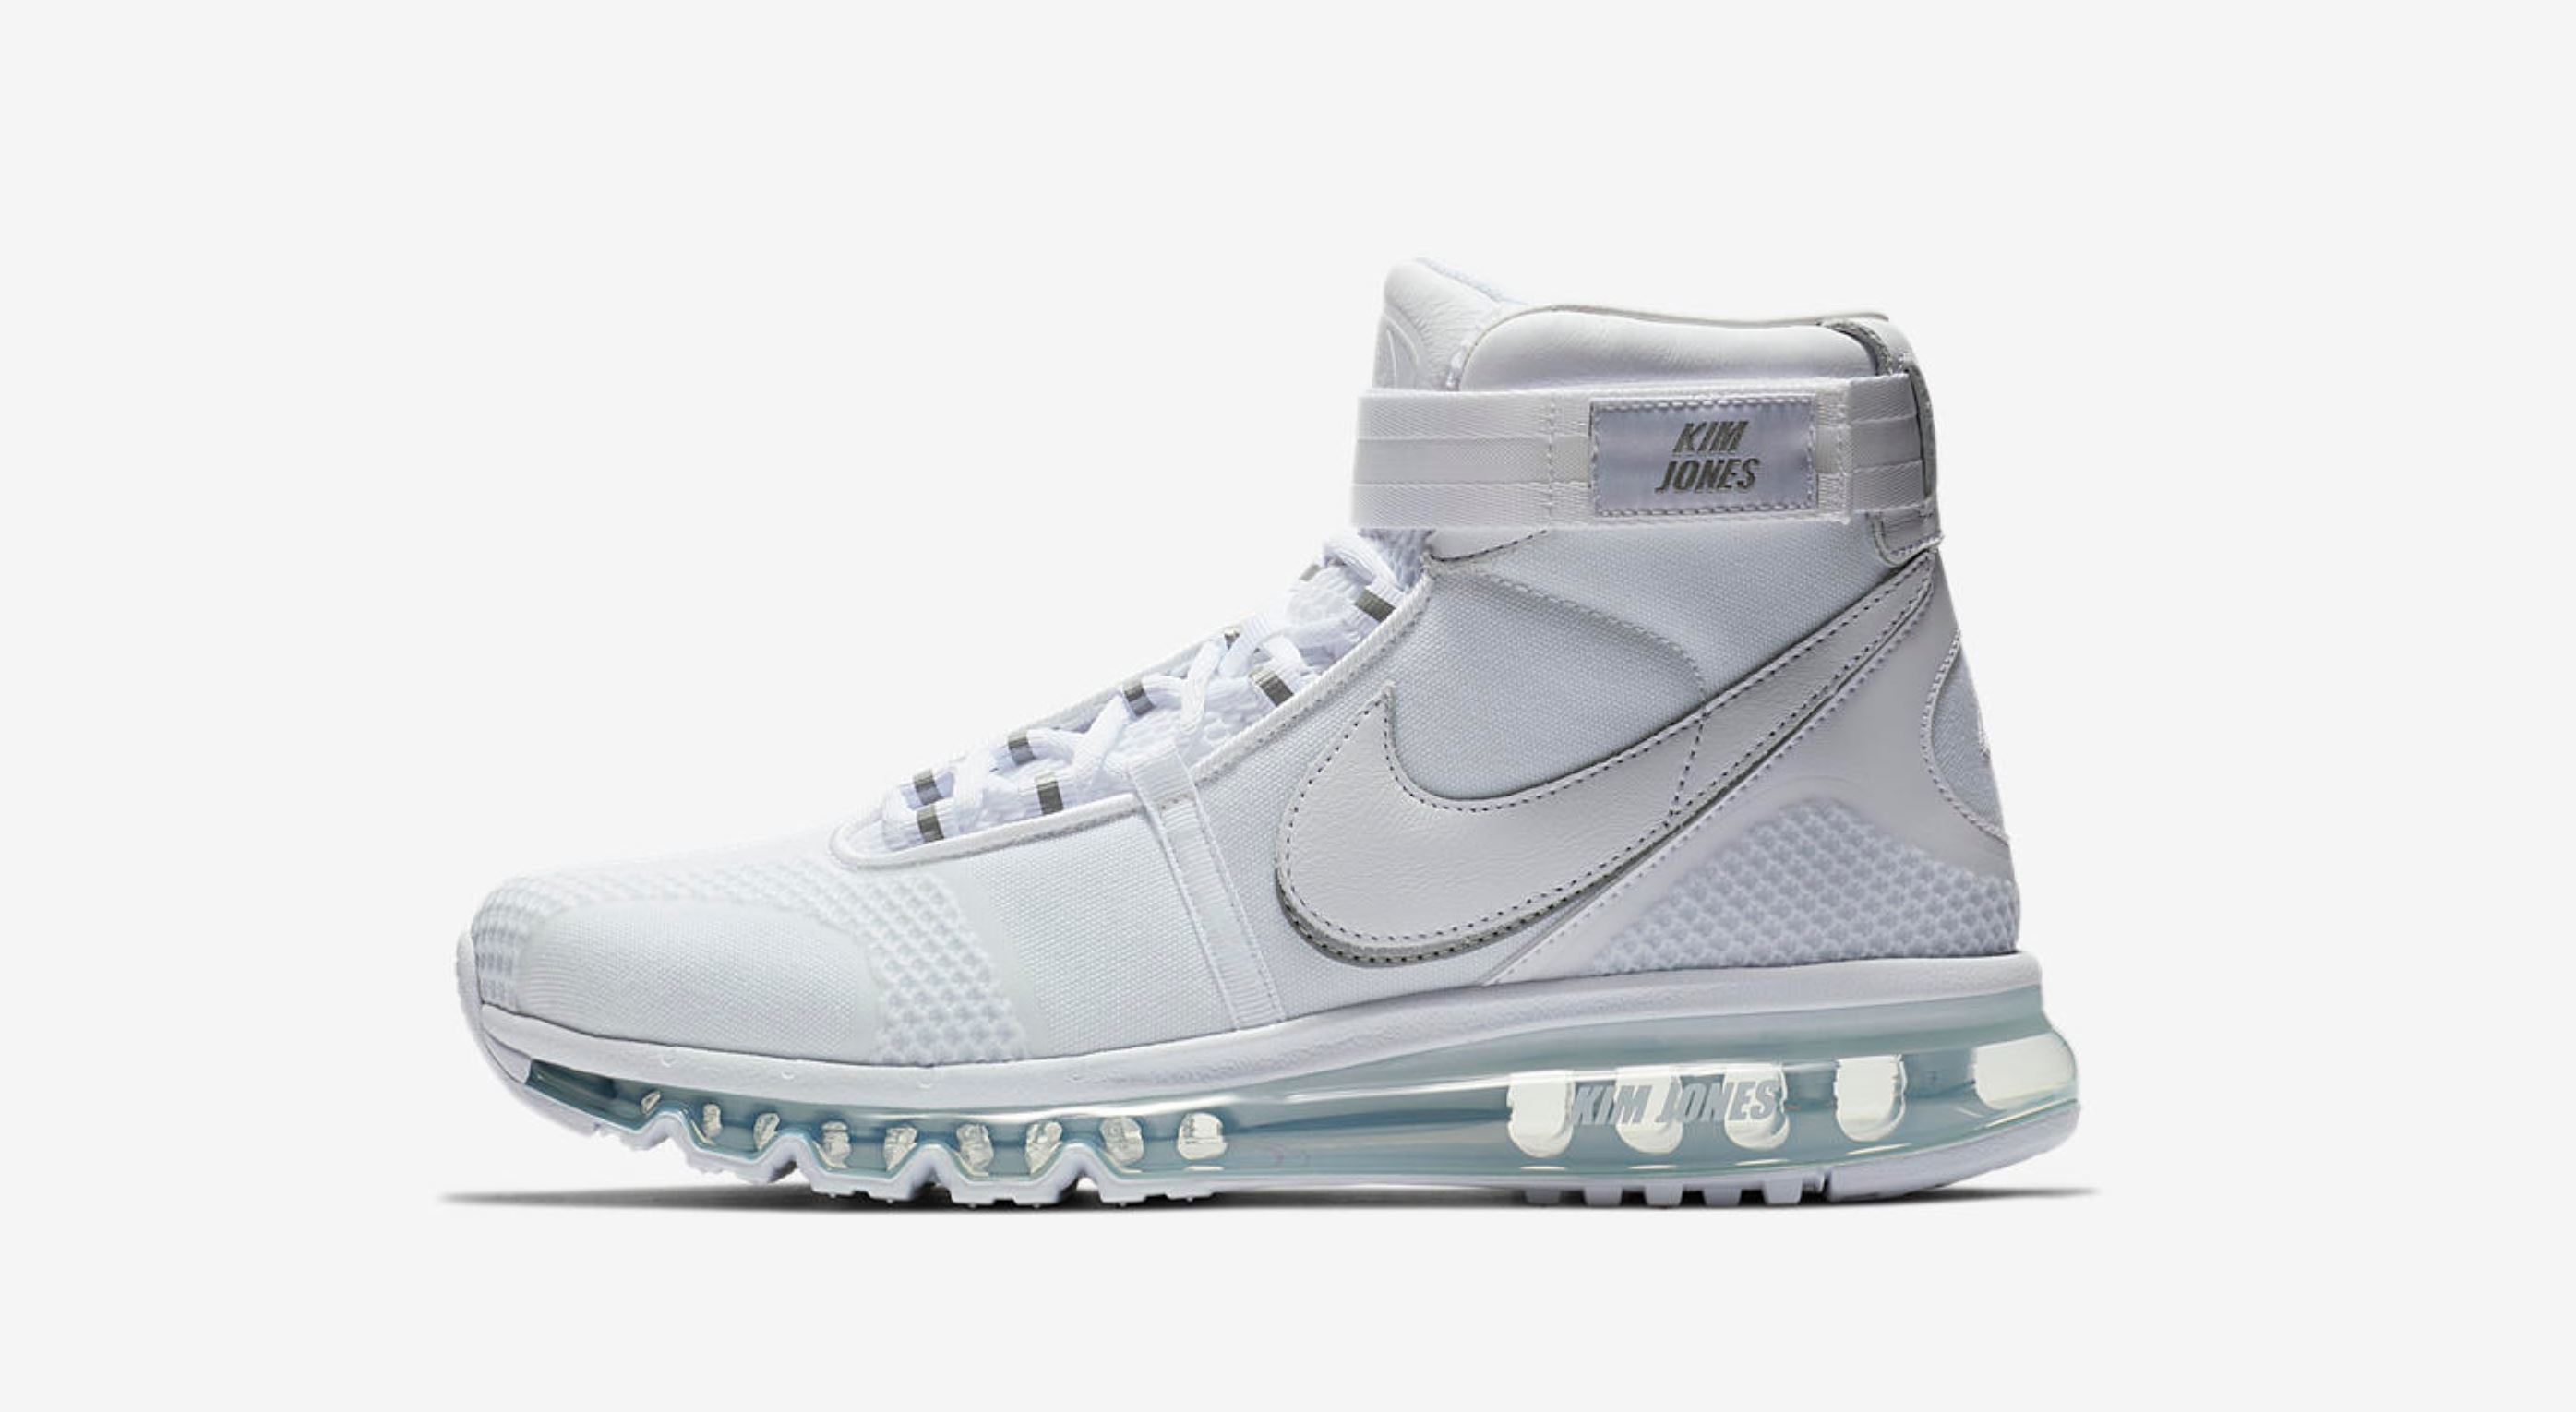 Both Nike Air Max 360 x Kim Jones Sneakers Will Releasing the U.S. This Week WearTesters